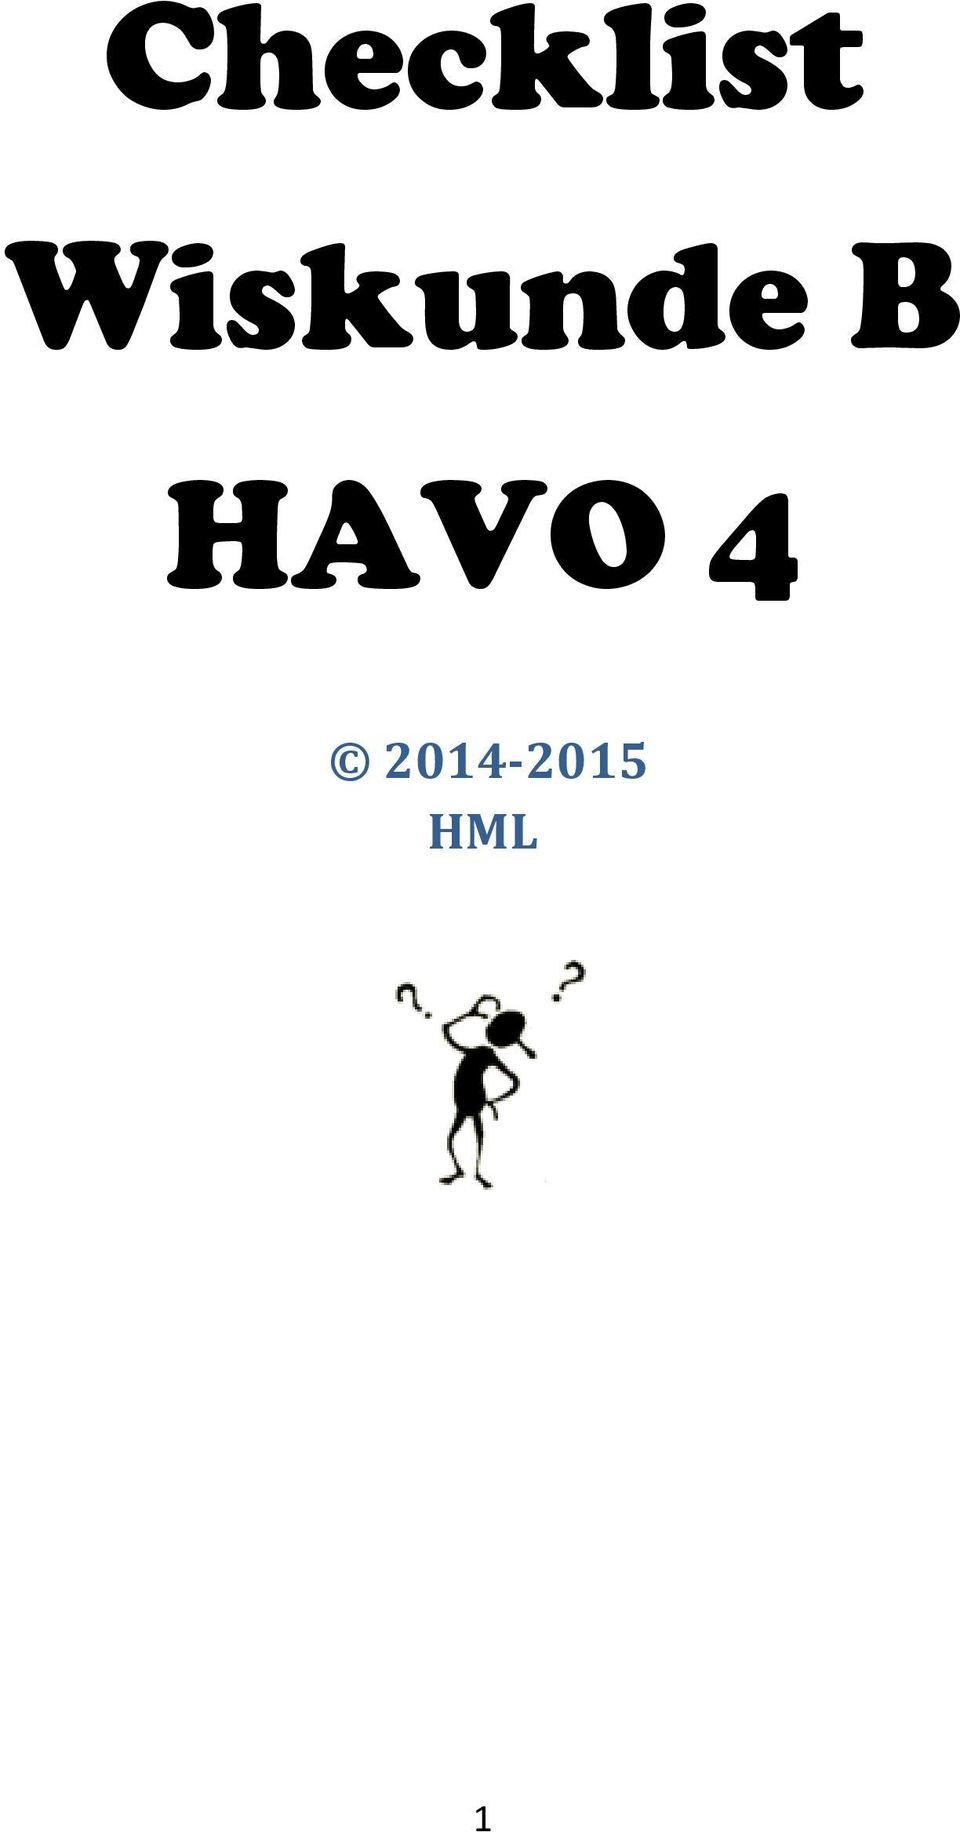 HAVO 4